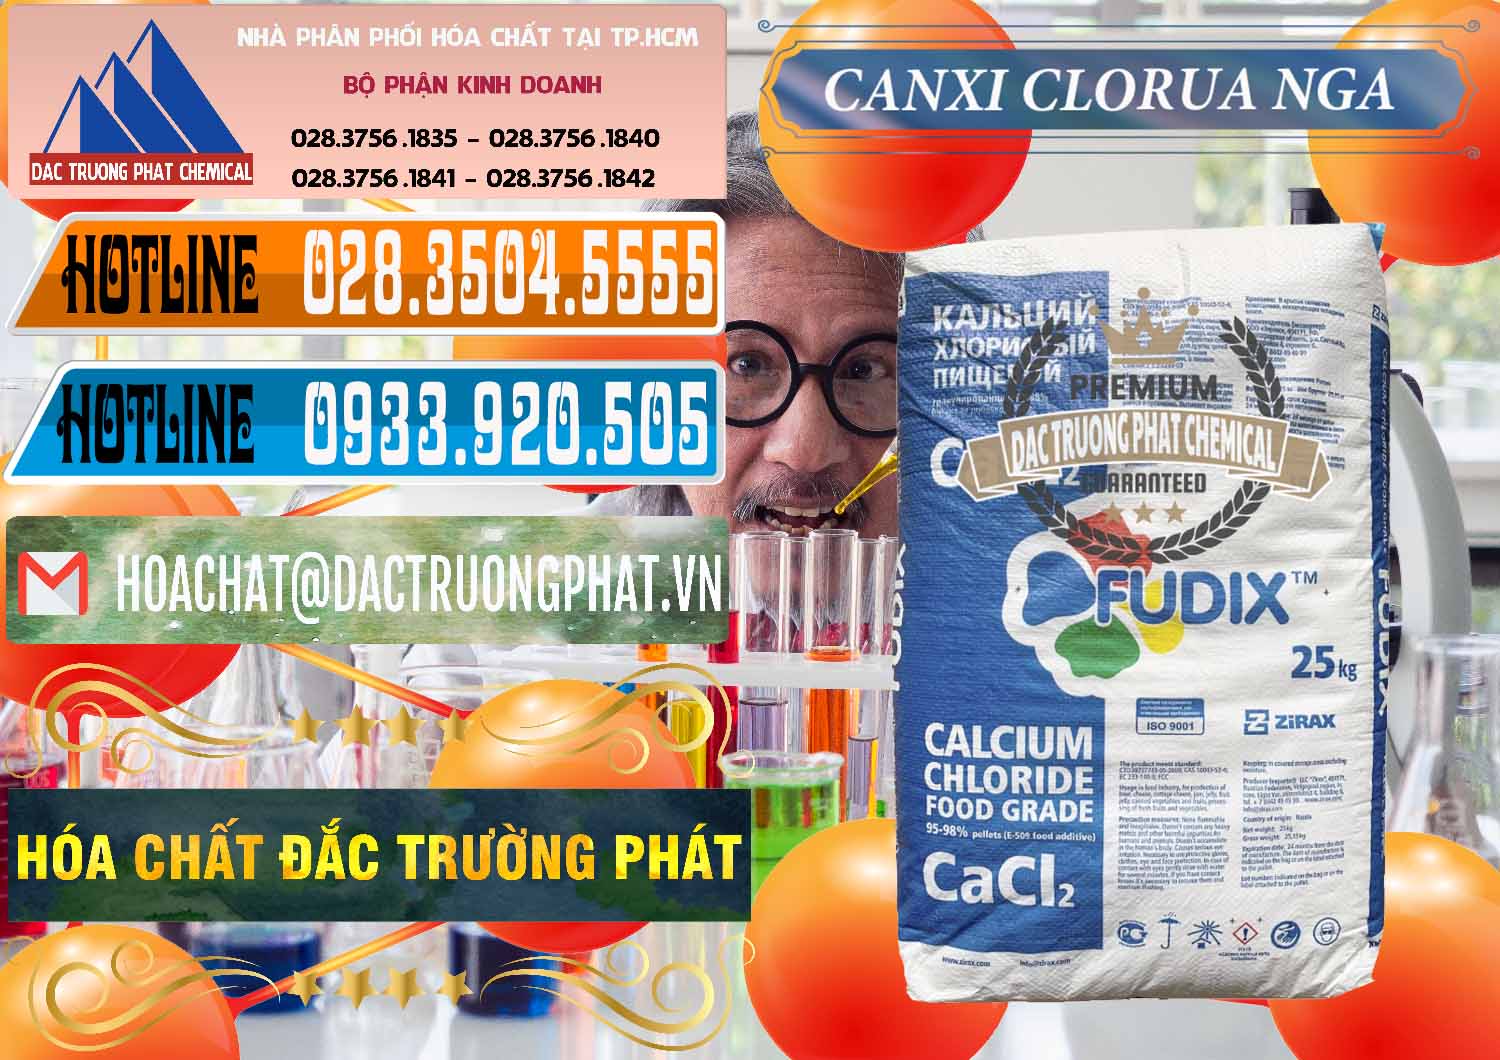 Kinh doanh - bán CaCl2 – Canxi Clorua Nga Russia - 0430 - Cty chuyên cung cấp & kinh doanh hóa chất tại TP.HCM - stmp.net